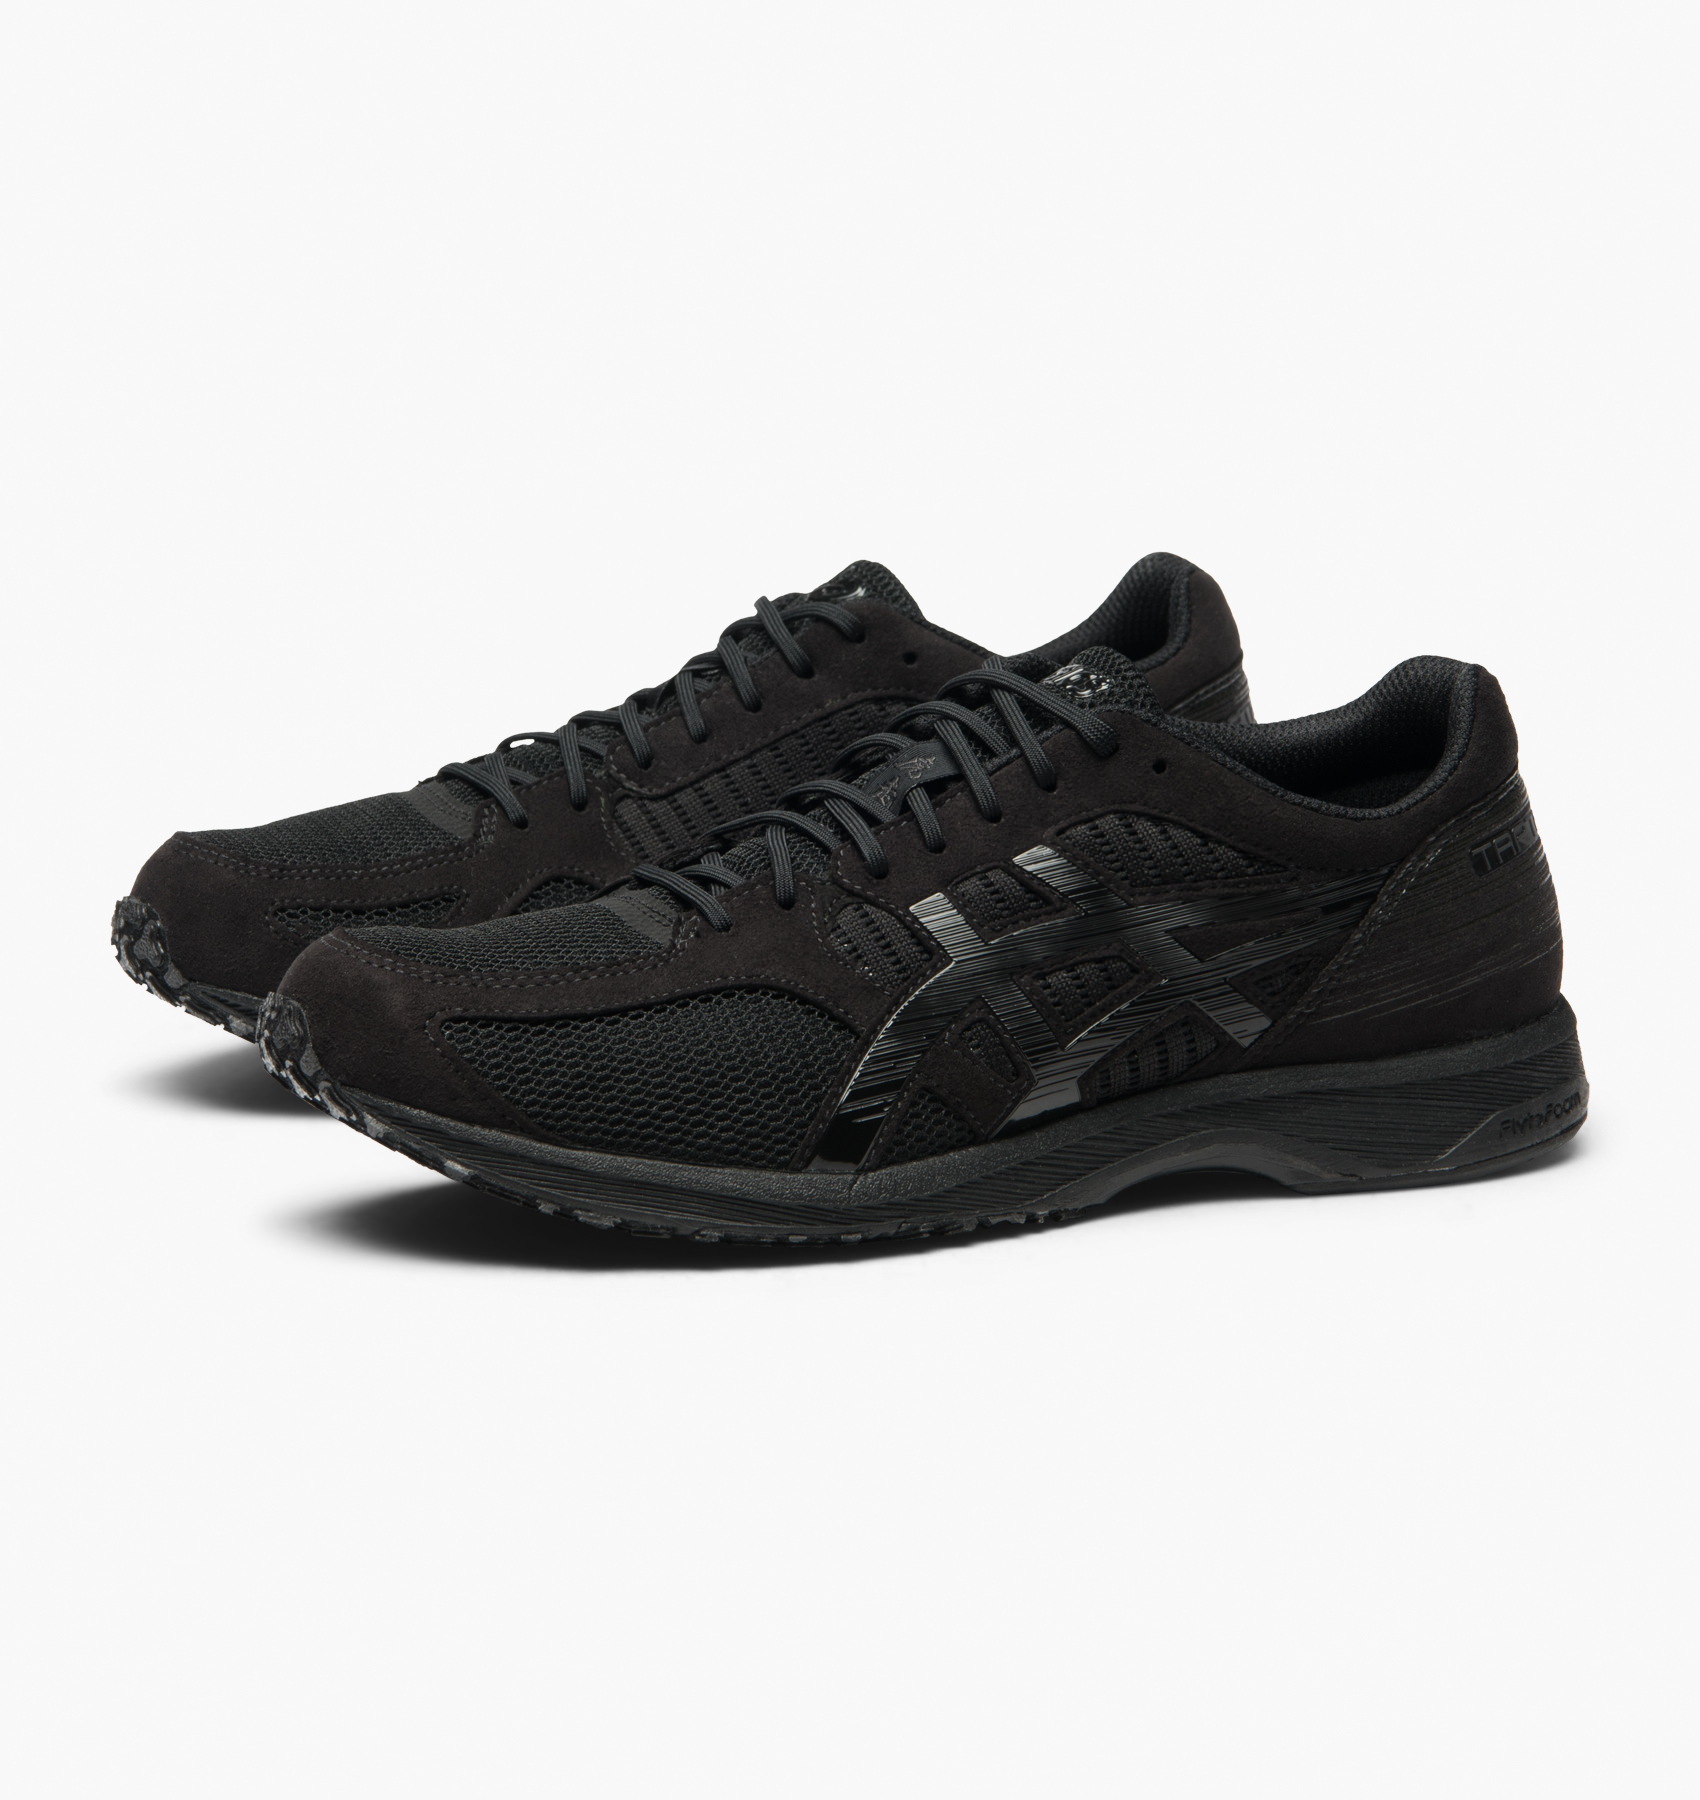 Black | Sneakers | T820N-9090 | Caliroots